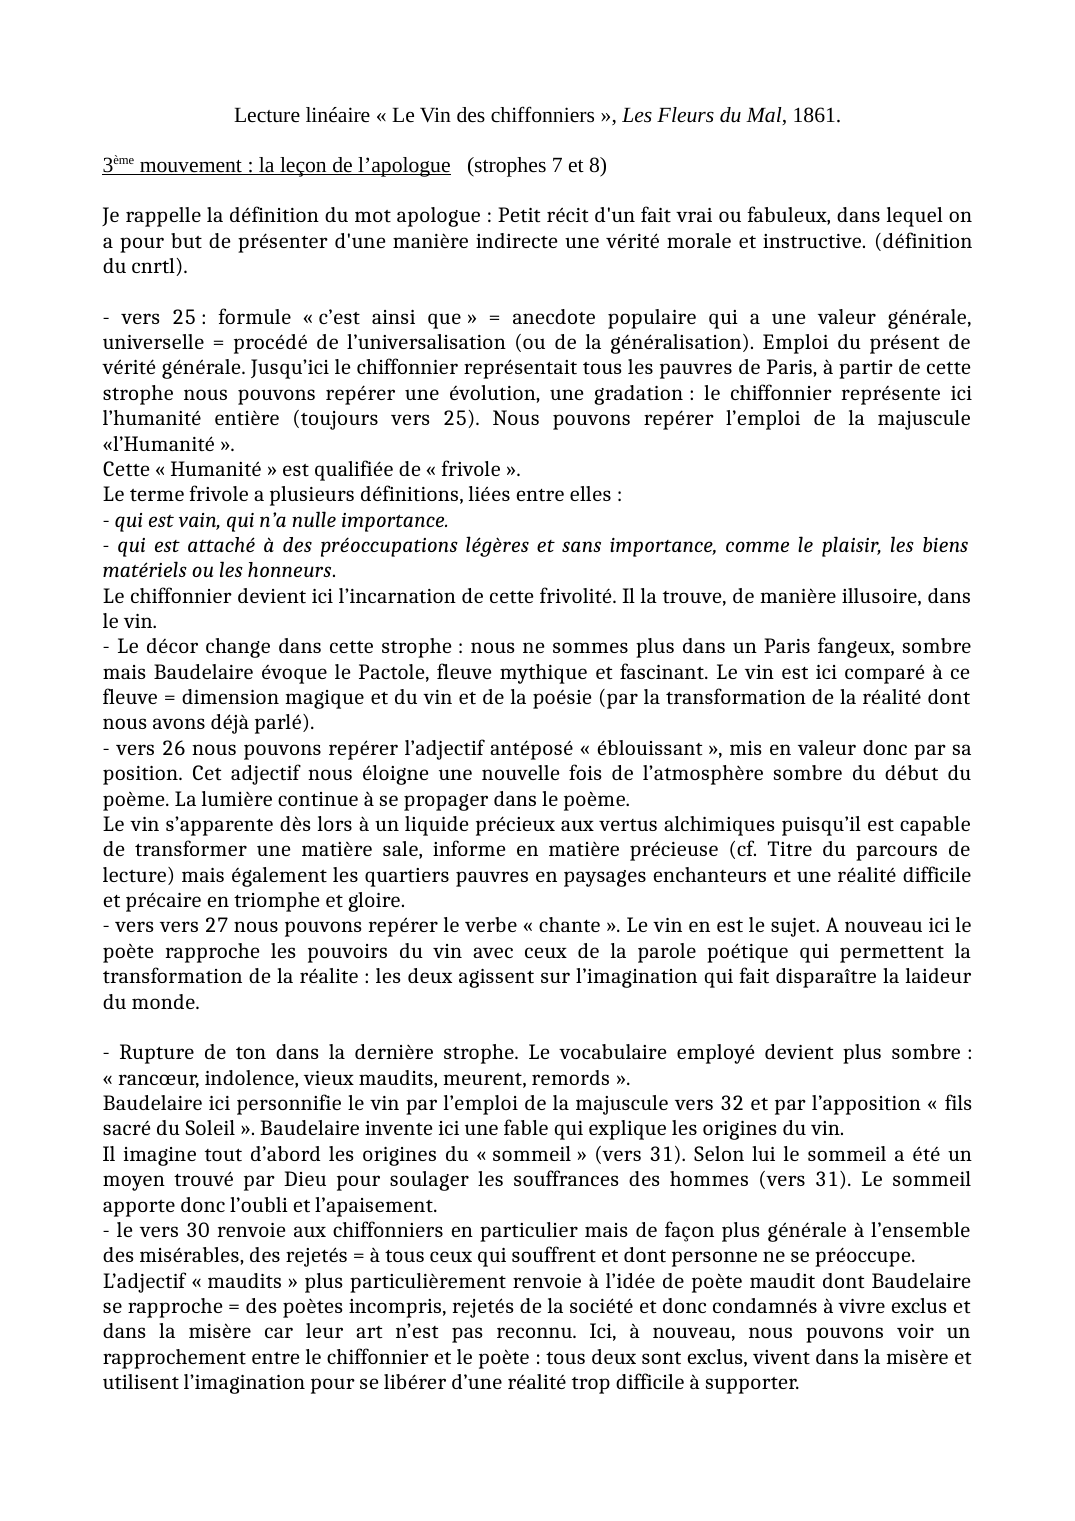 Prévisualisation du document lecture linéaire "Le Vin des chiffonniers" Baudelaire